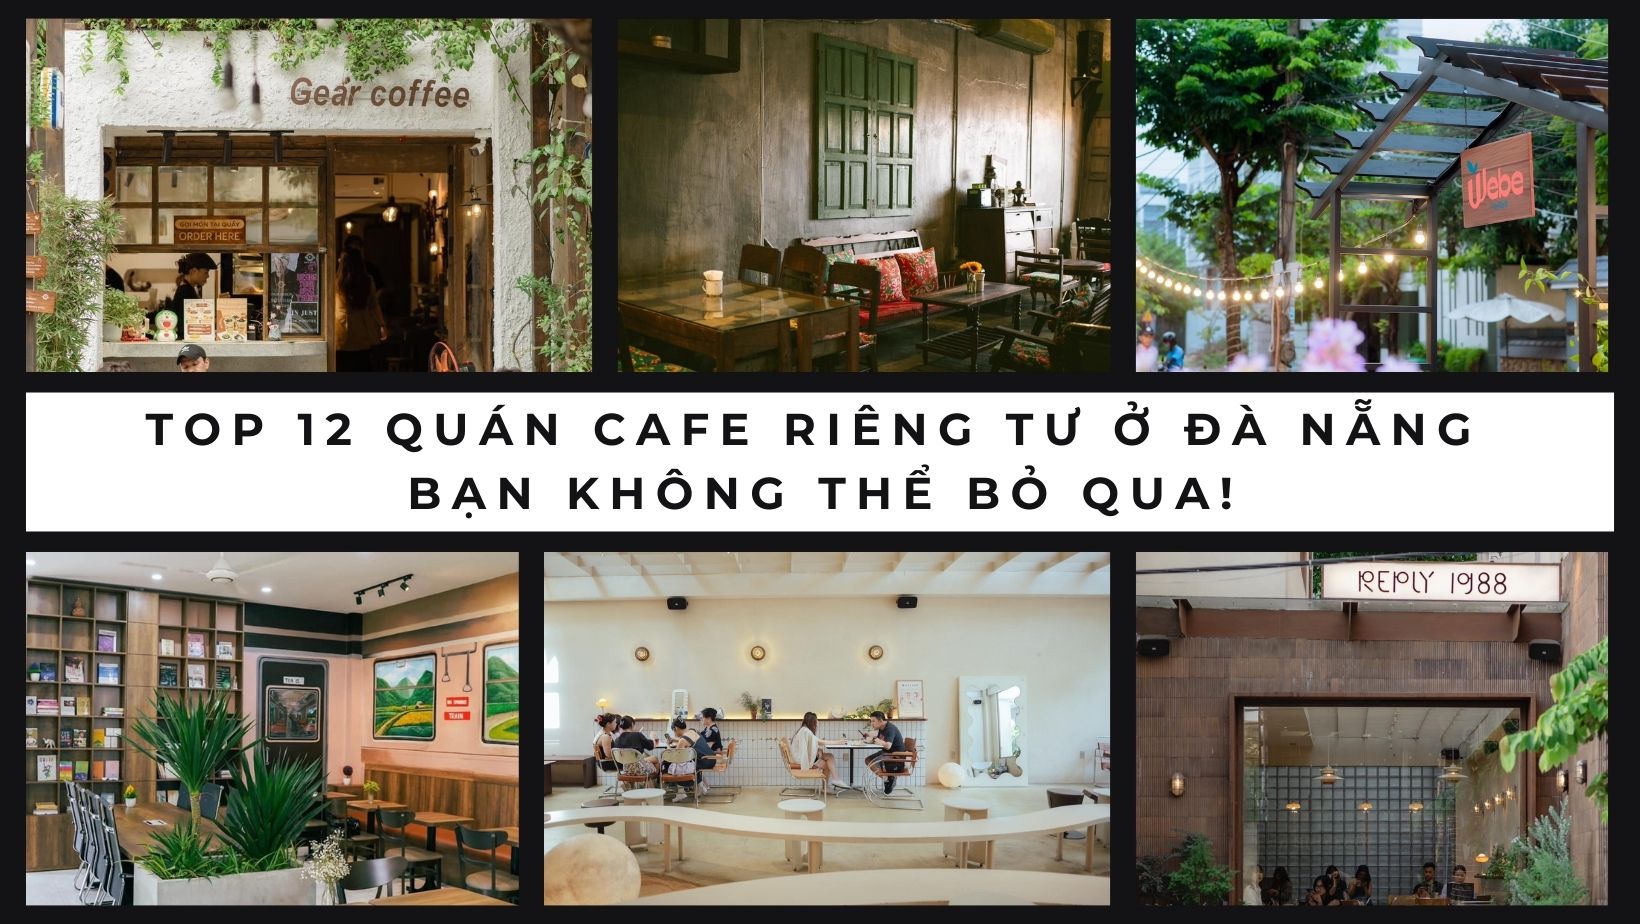 Top 12 quán cafe riêng tư ở Đà Nẵng bạn không thể bỏ qua!